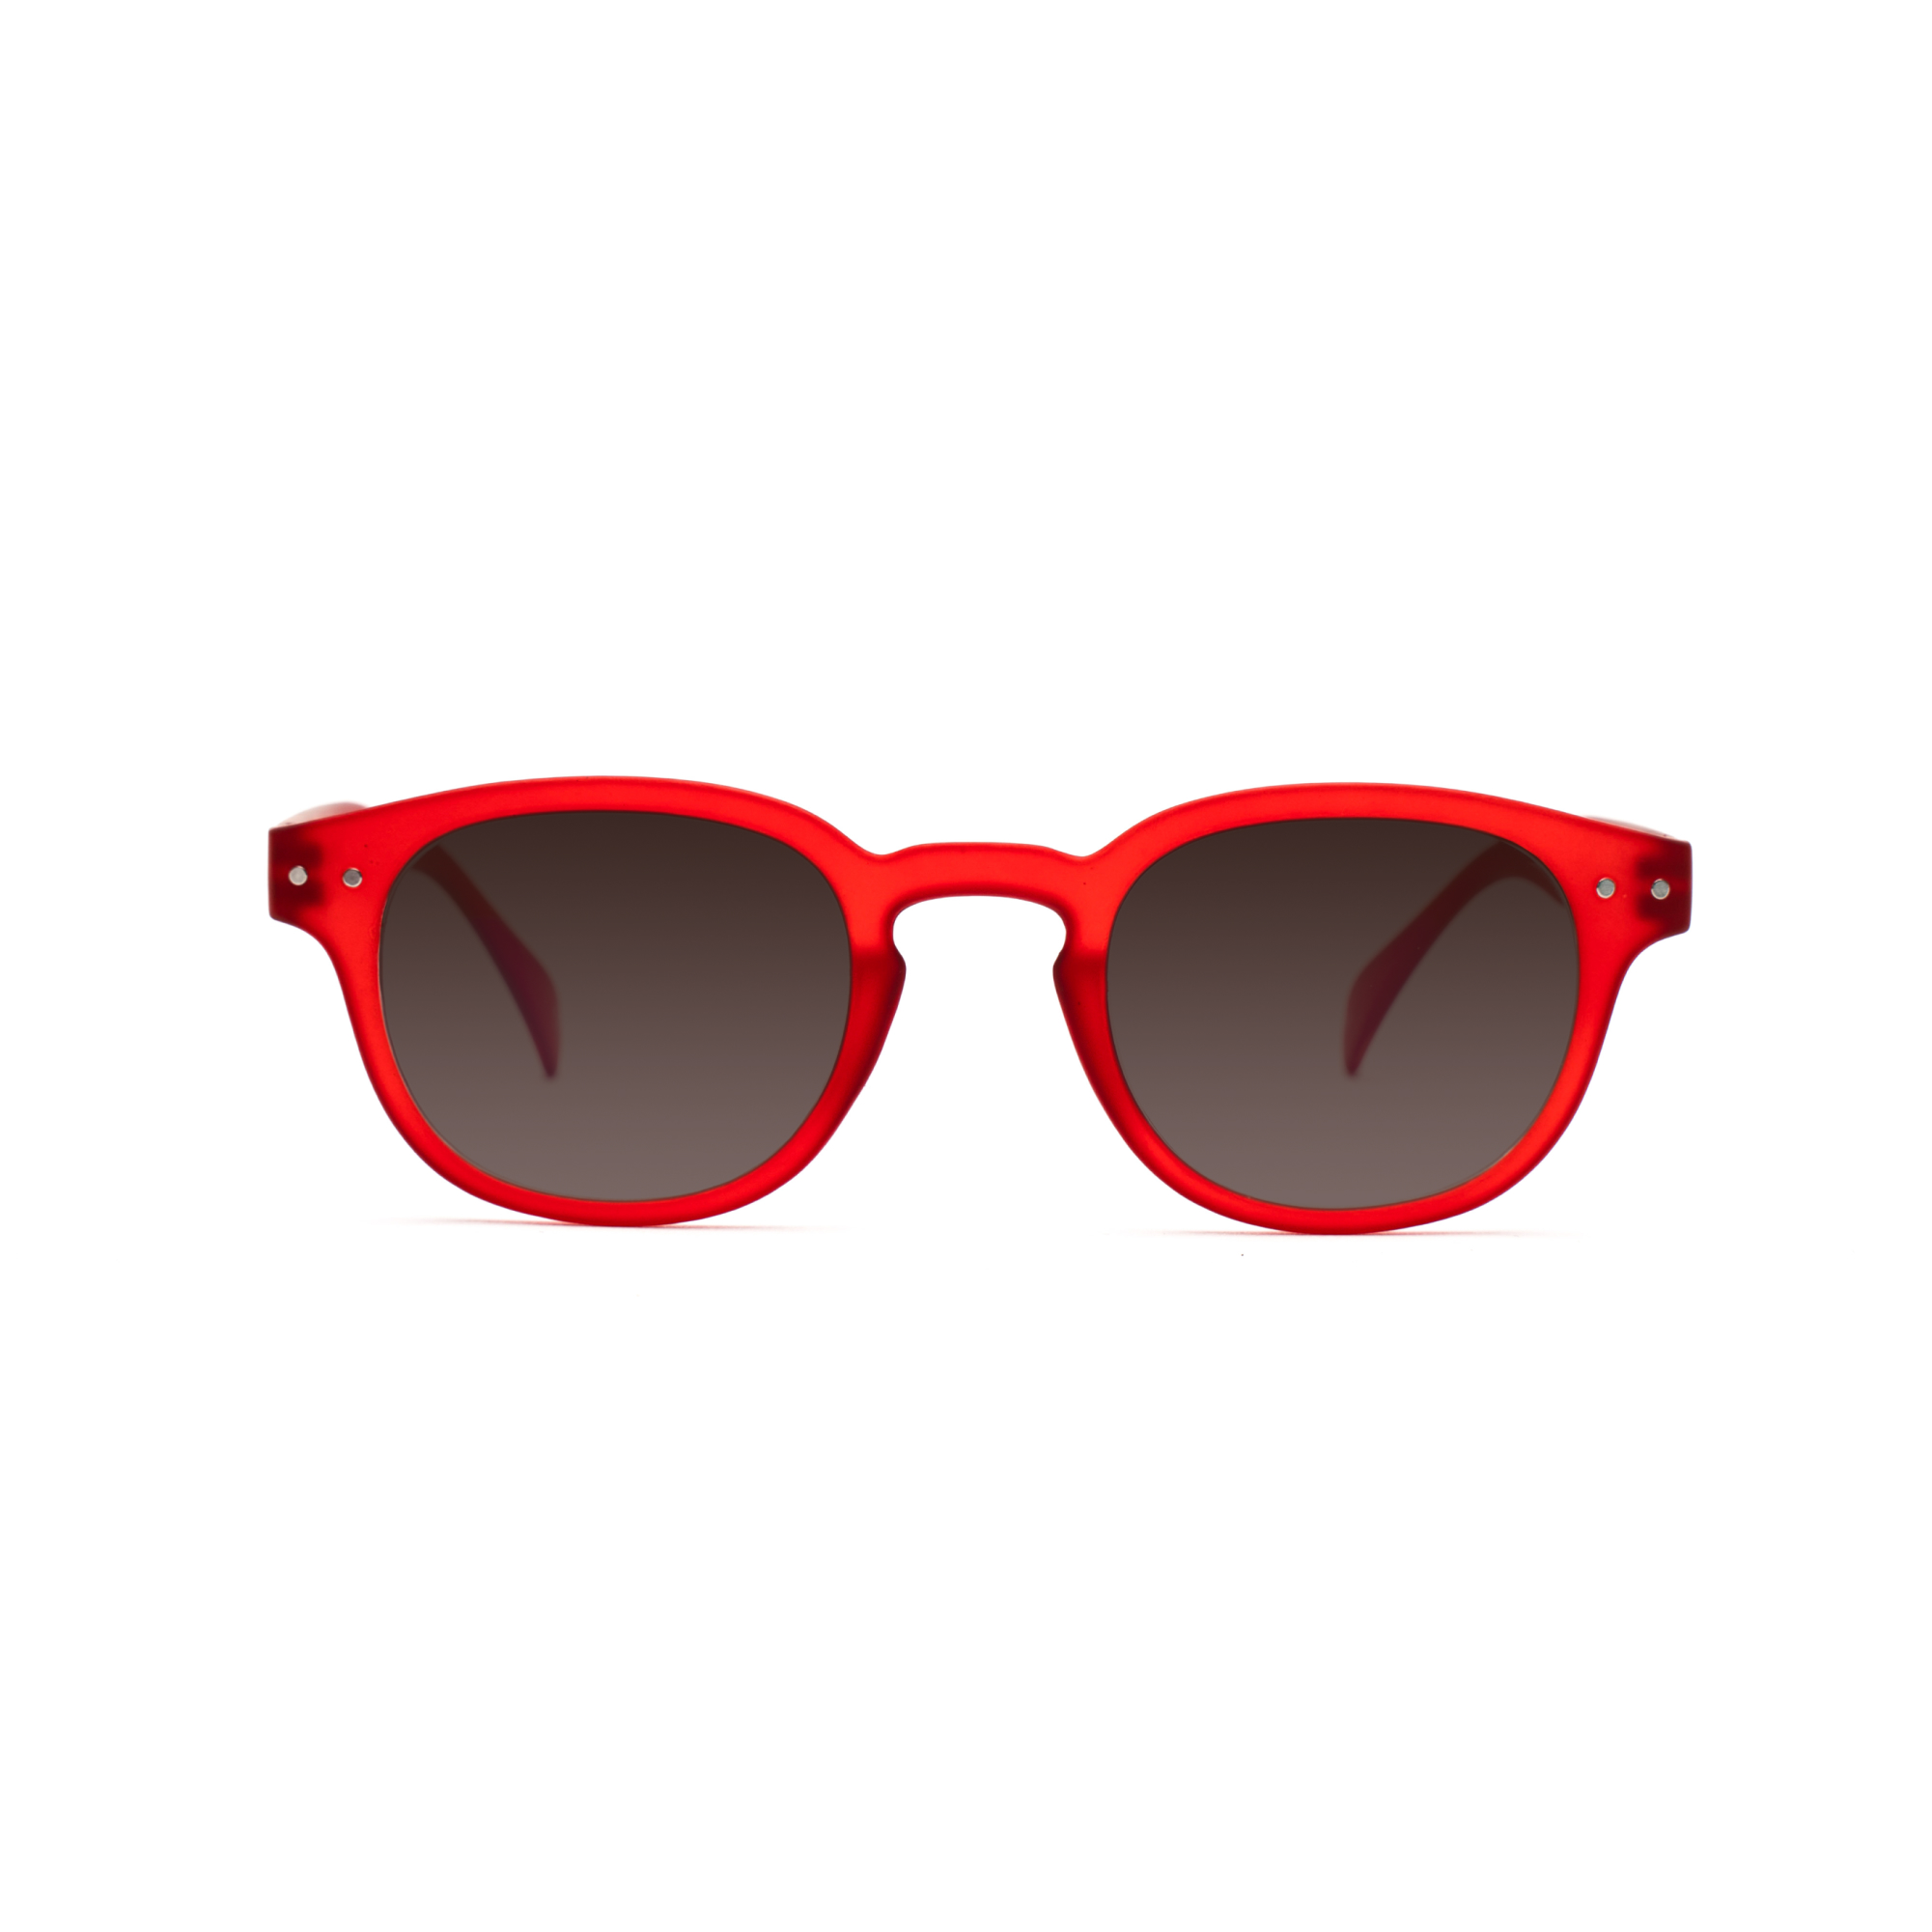 men's polarized sunglasses – Anton Polarised SUN m - Red